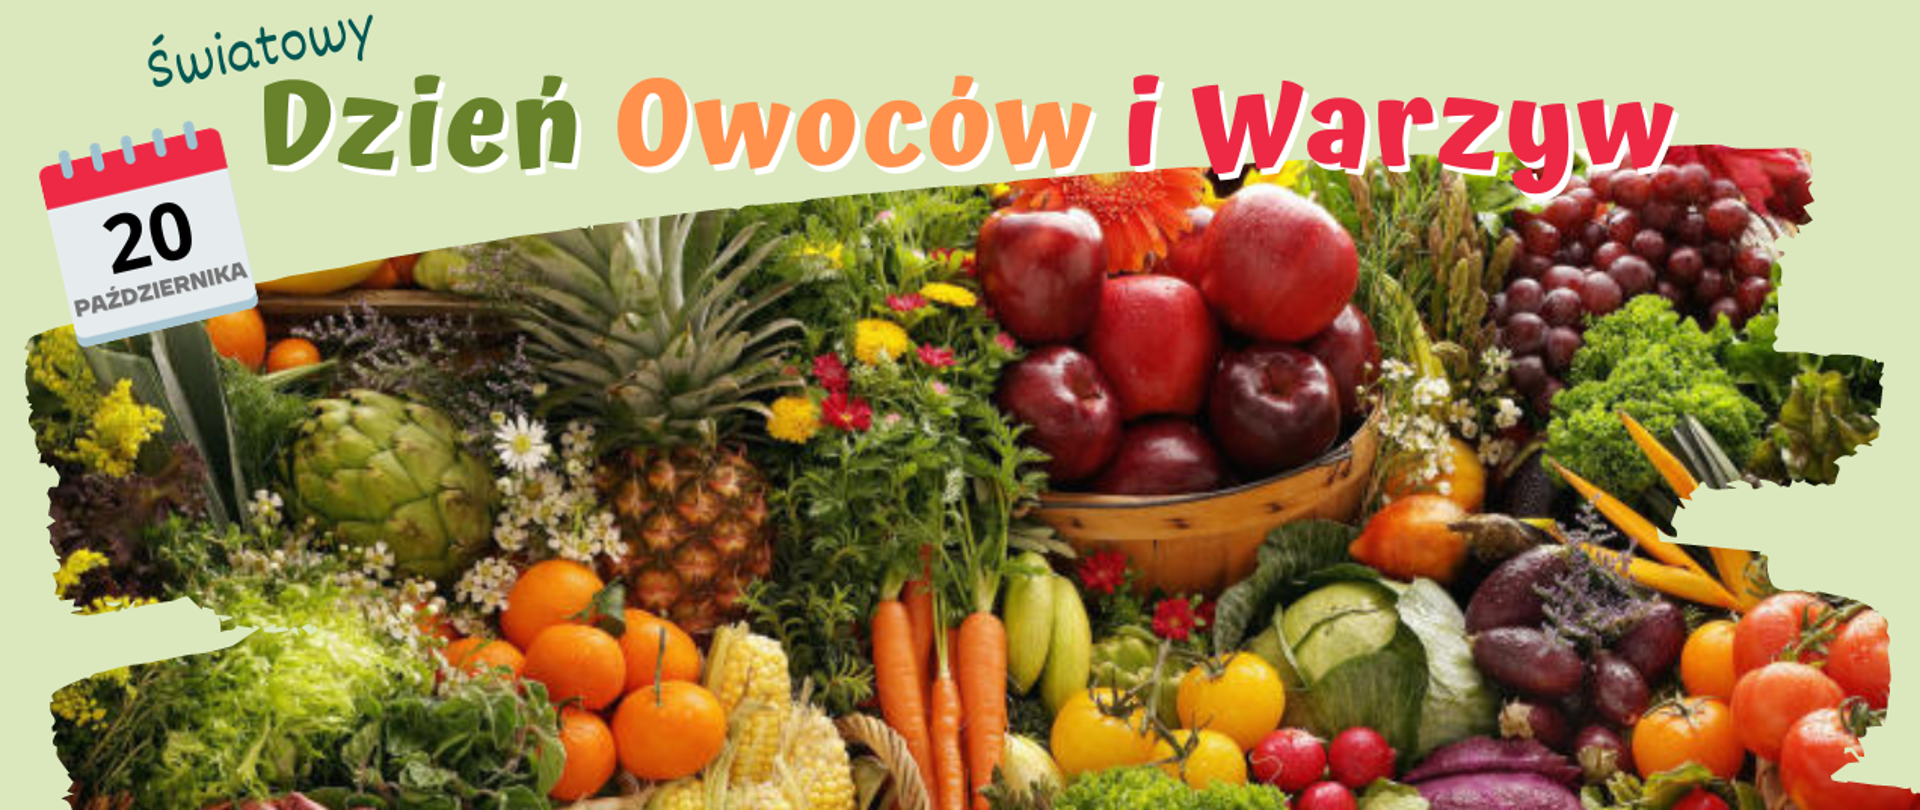 Grafika ilustracyjna z różnymi owocami i warzywami oraz napisem: 20 października, Światowy Dzień Owoców i Warzyw